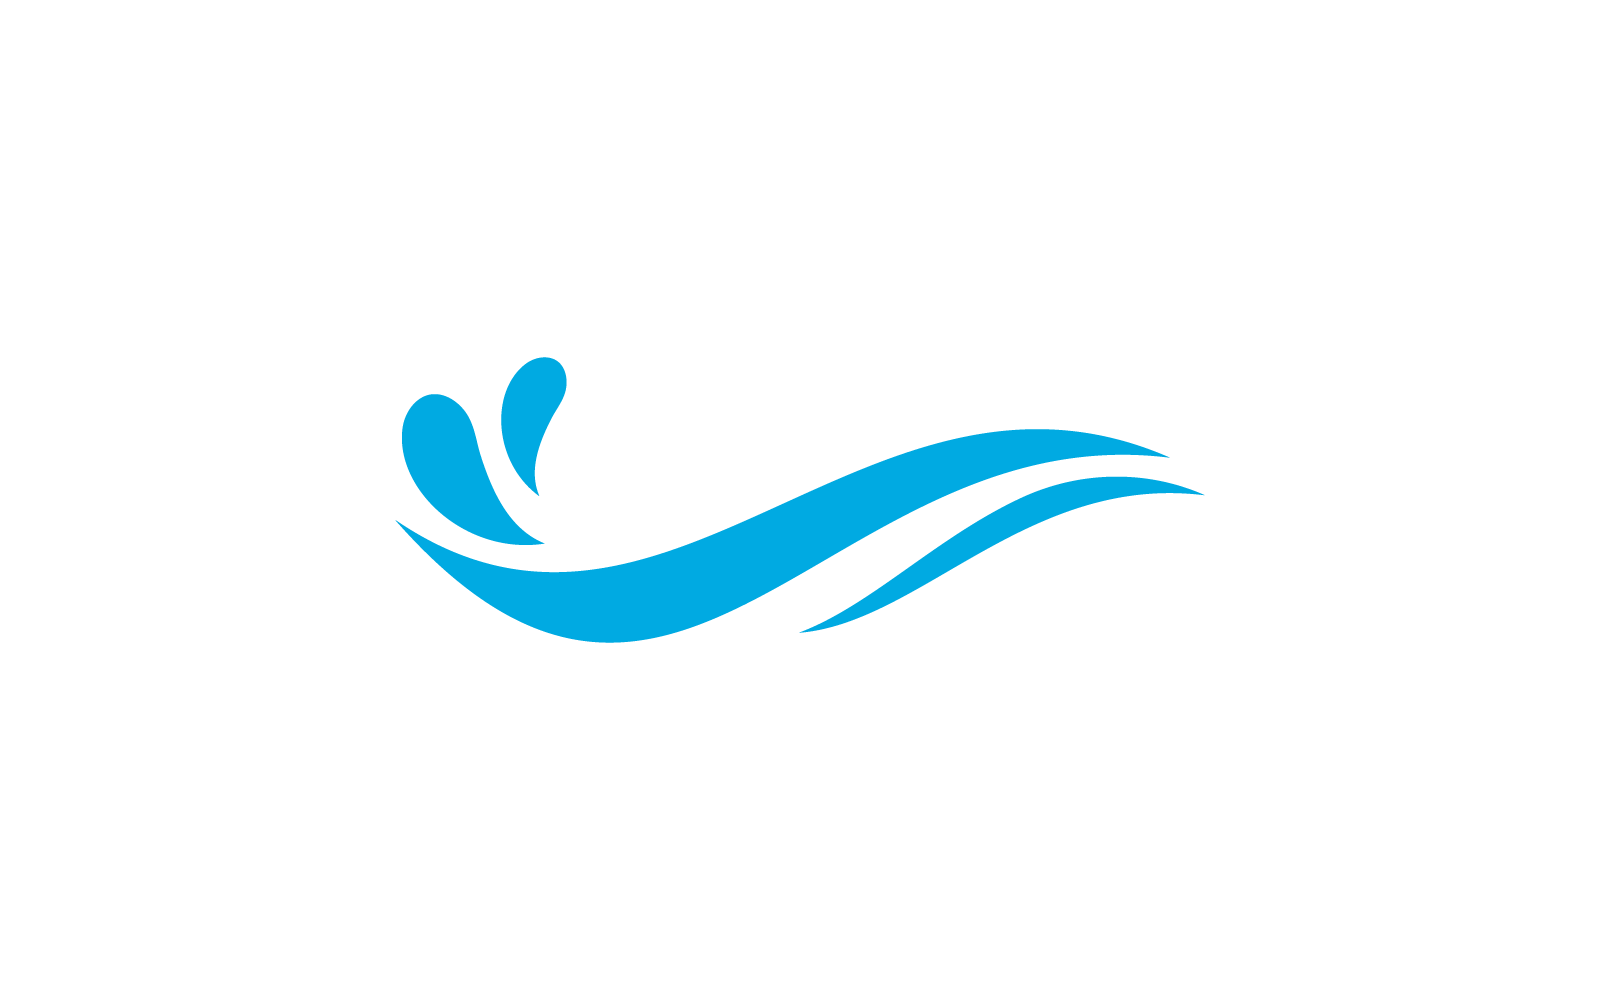 Water Wave logo vector  illustration flat design